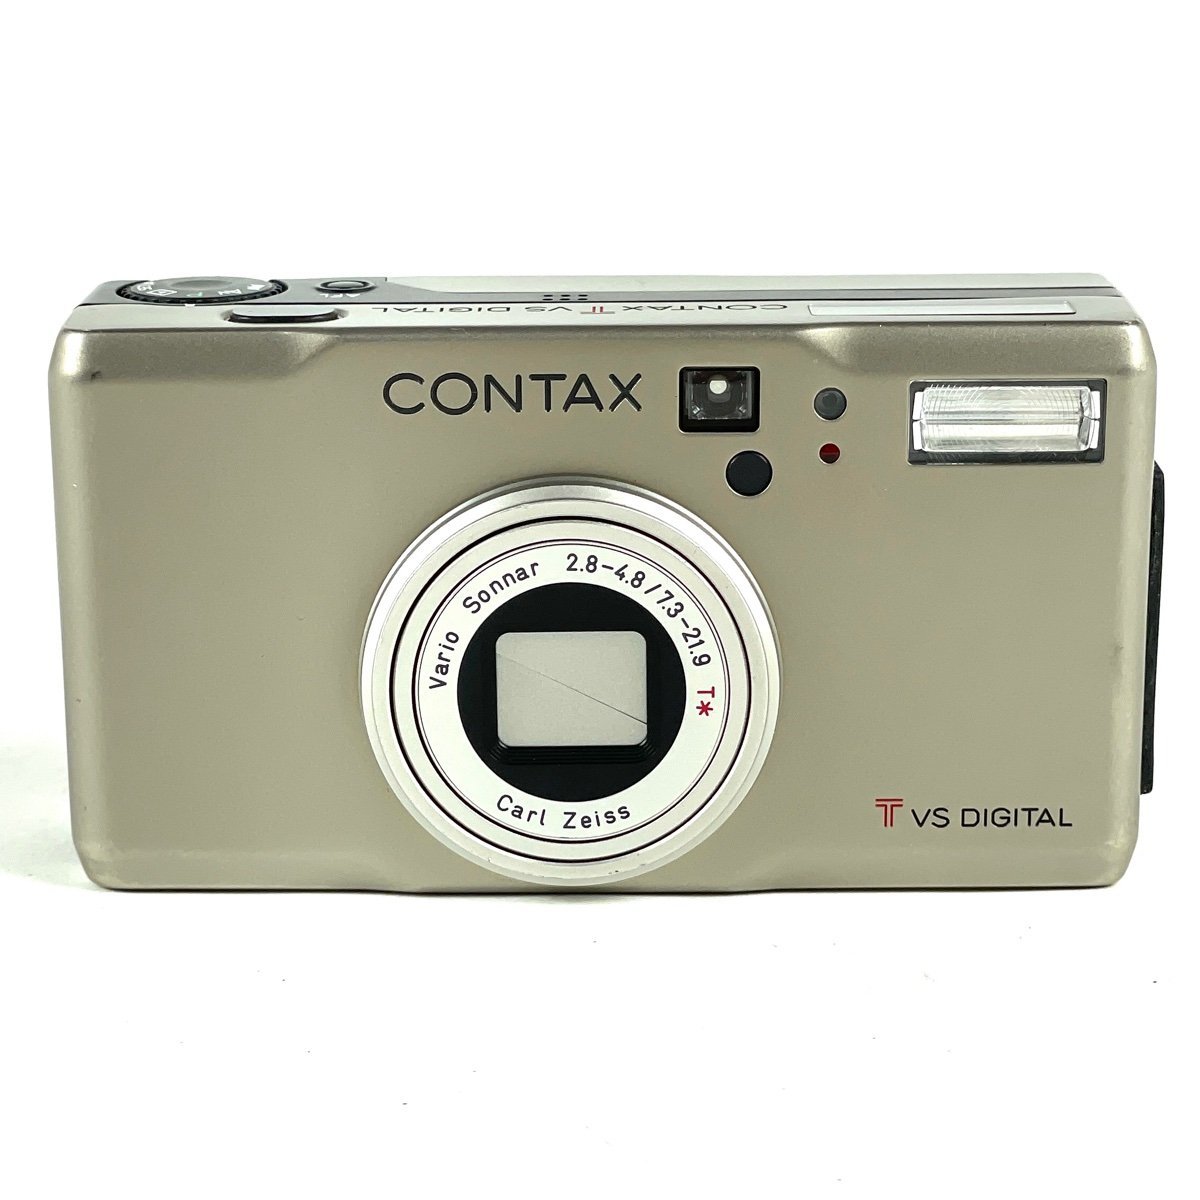 コンタックス CONTAX TVS DIGITAL コンパクトデジタルカメラ